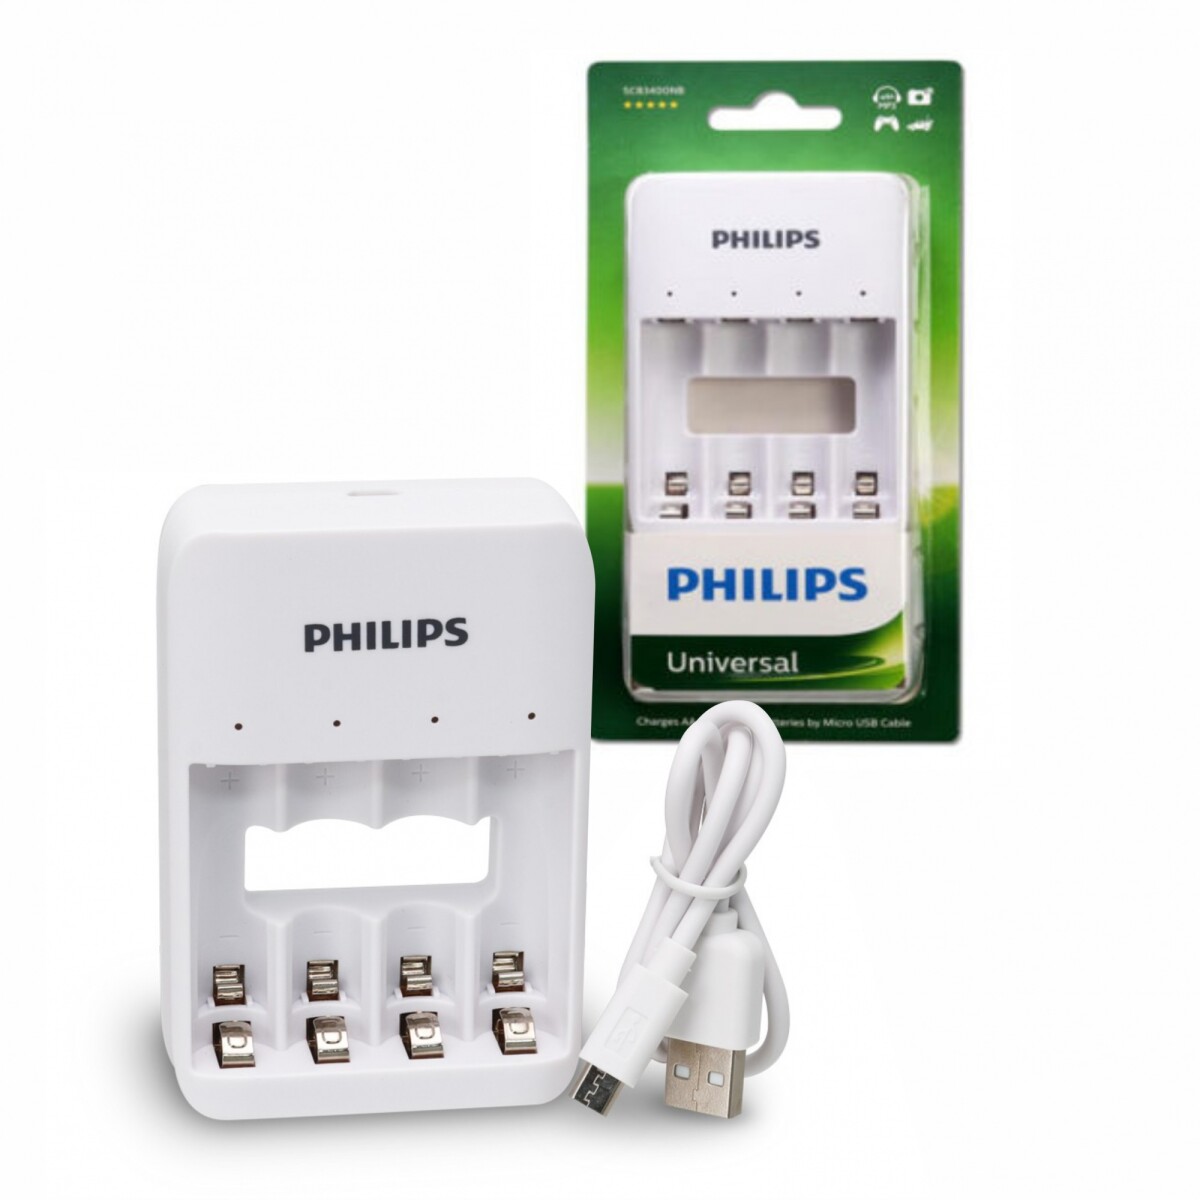 Cargador USB Philips para 4 Pilas Aaa/aa - 001 